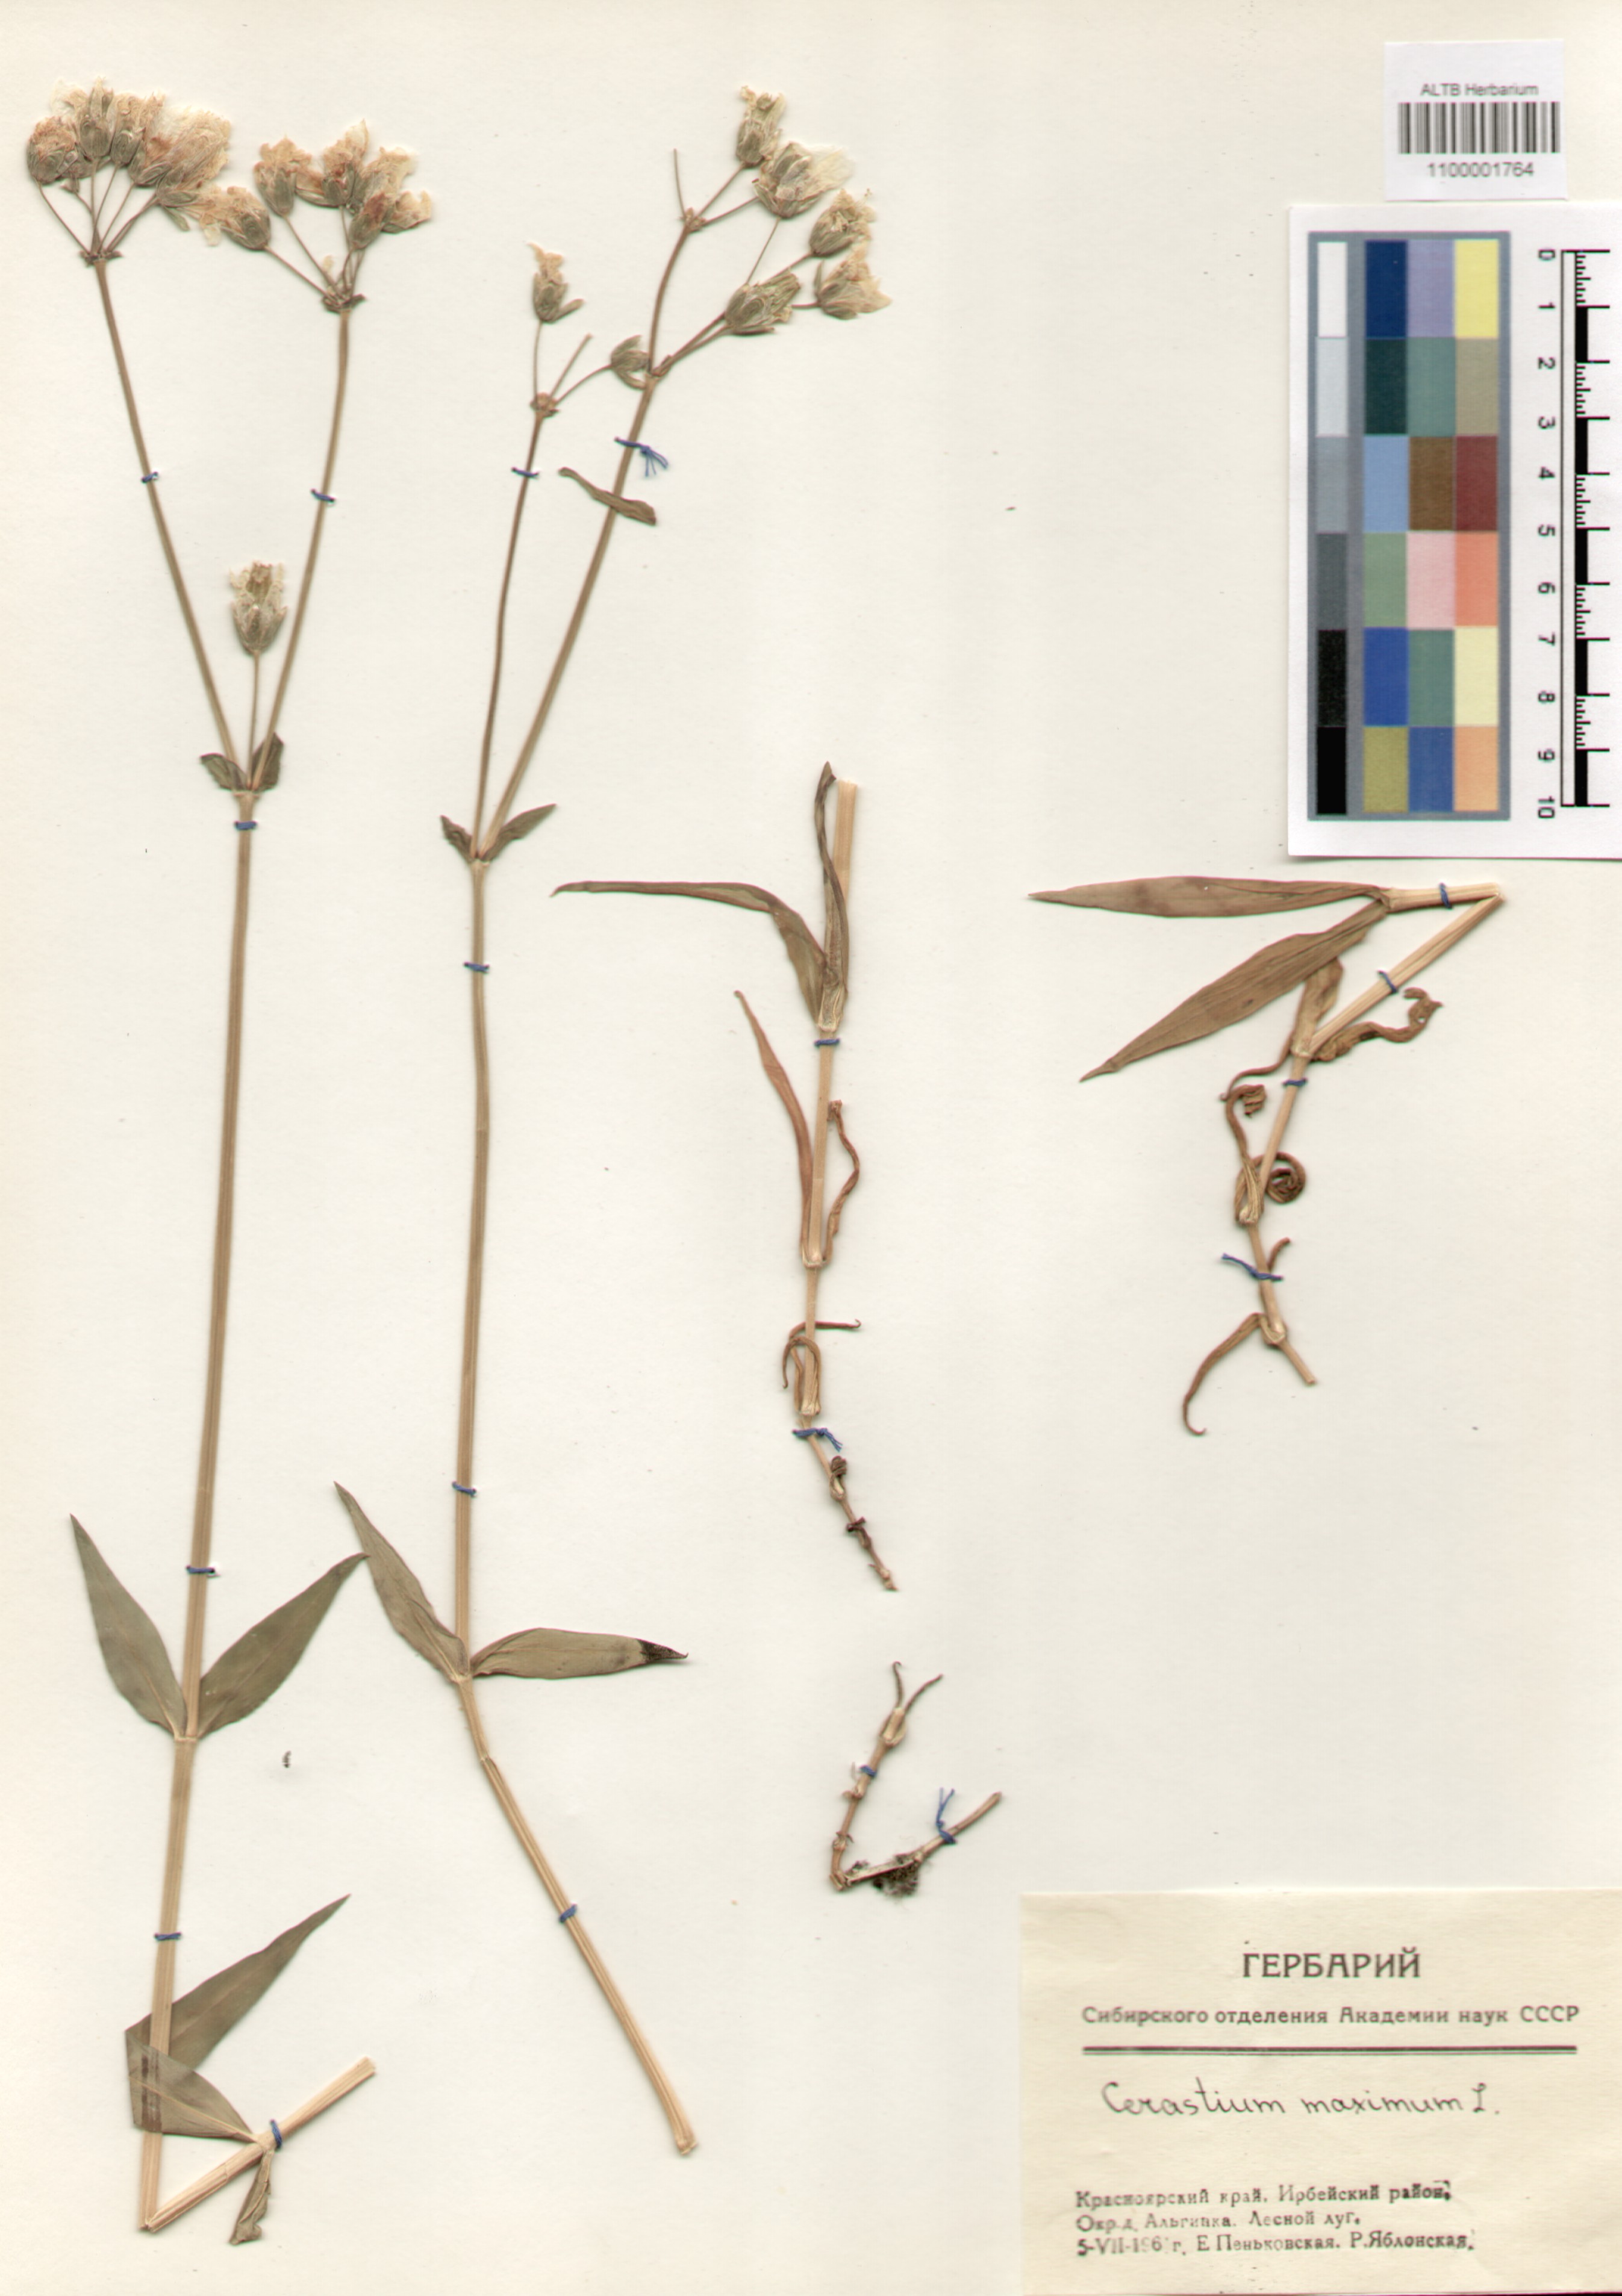 Caryophyllaceae,Cerastium maximum L.